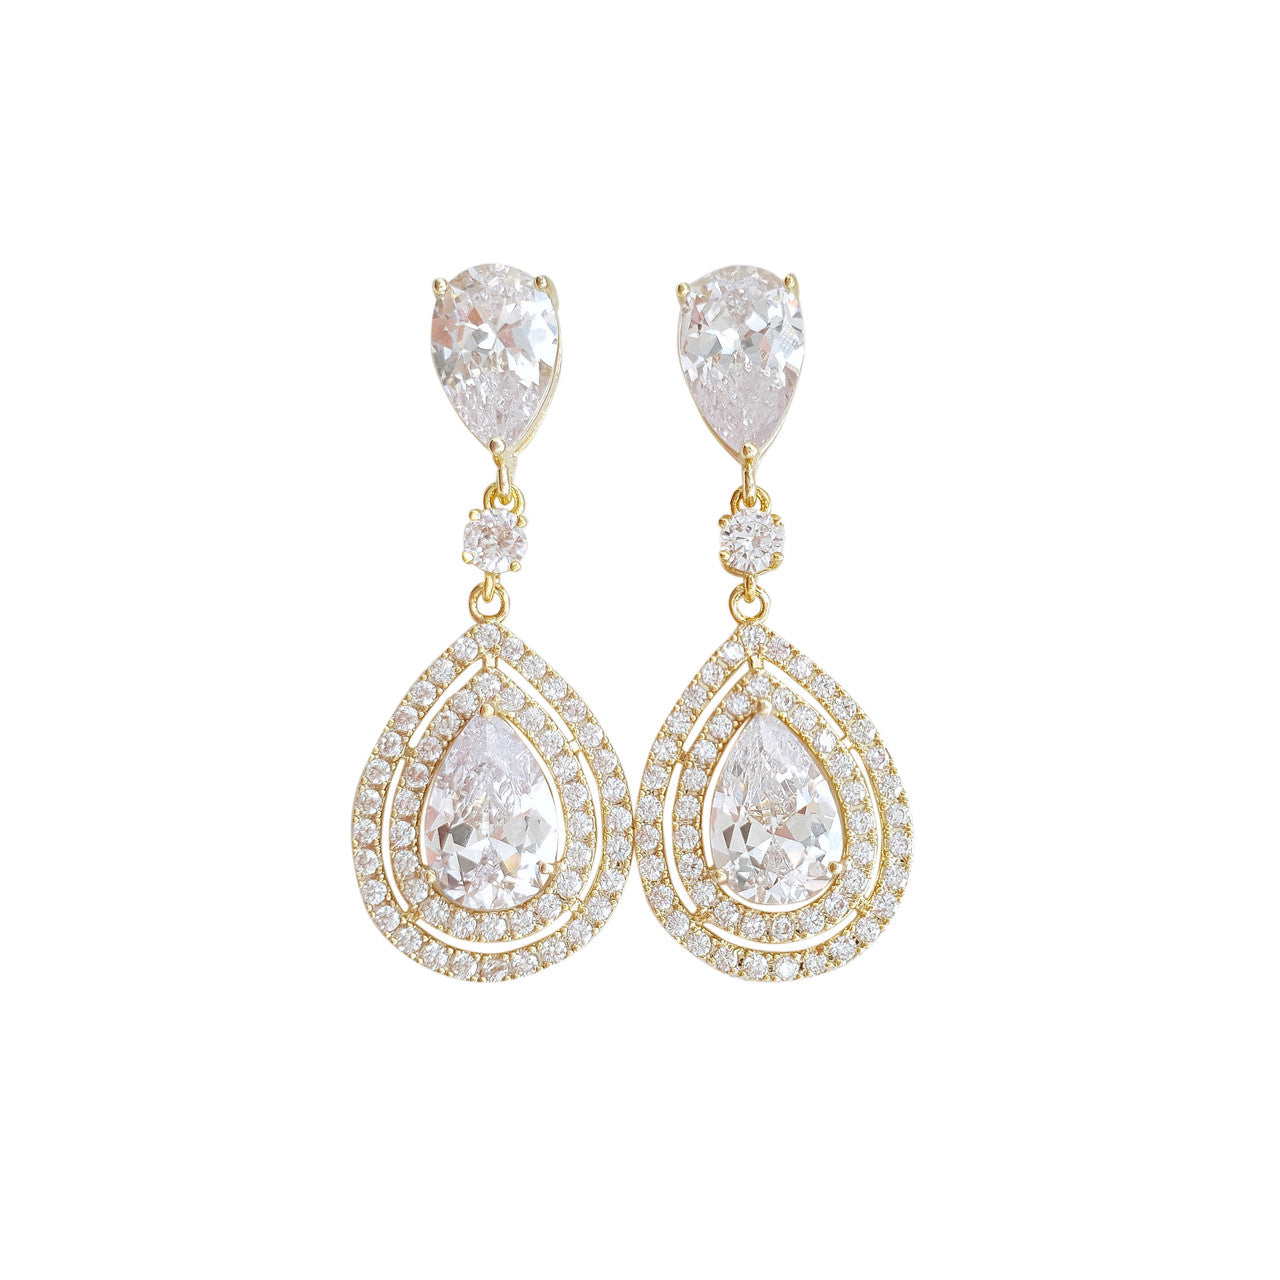 Gold Crystal Teardrop Earrings for Weddings- Joni